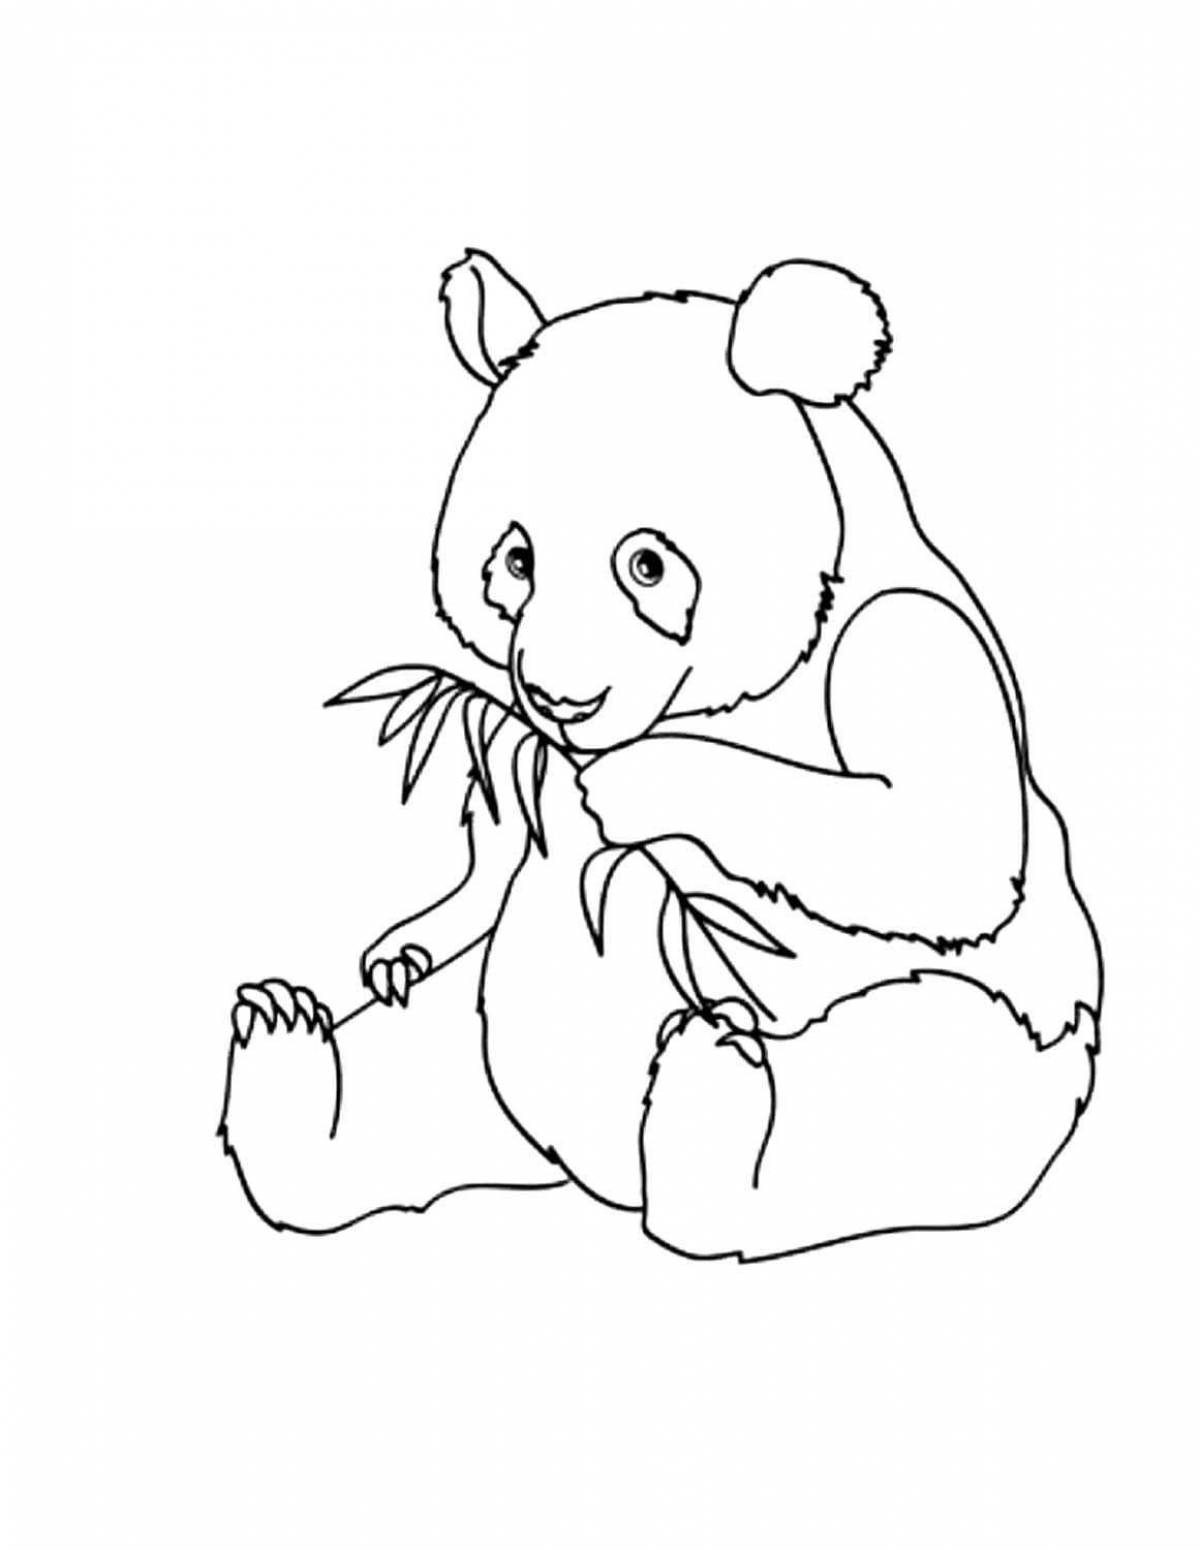 Живая страница раскраски маленькой панды